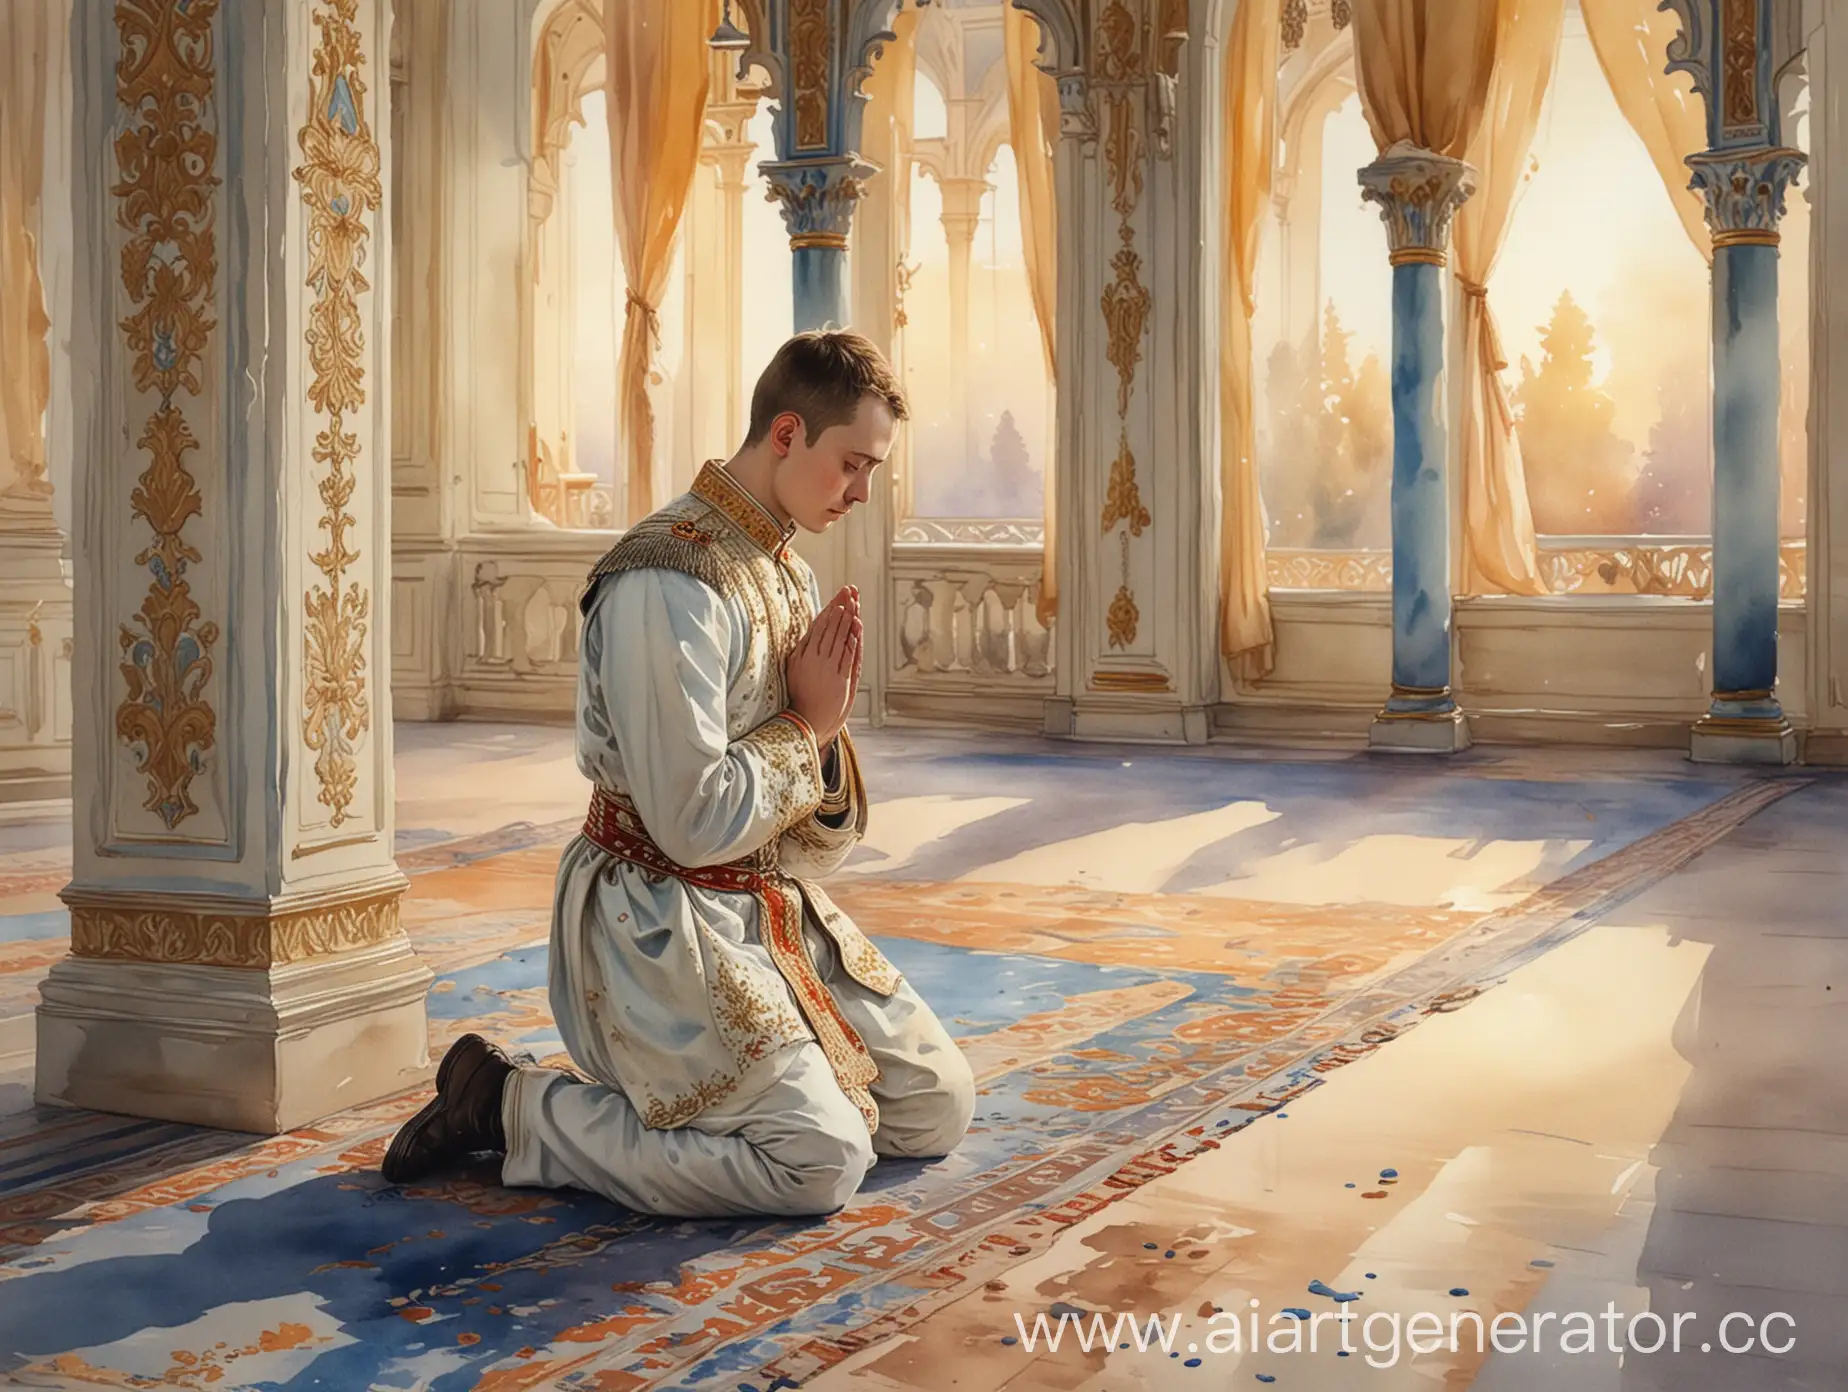 Young-Tsar-Praying-in-Beautiful-Palace-at-Evening